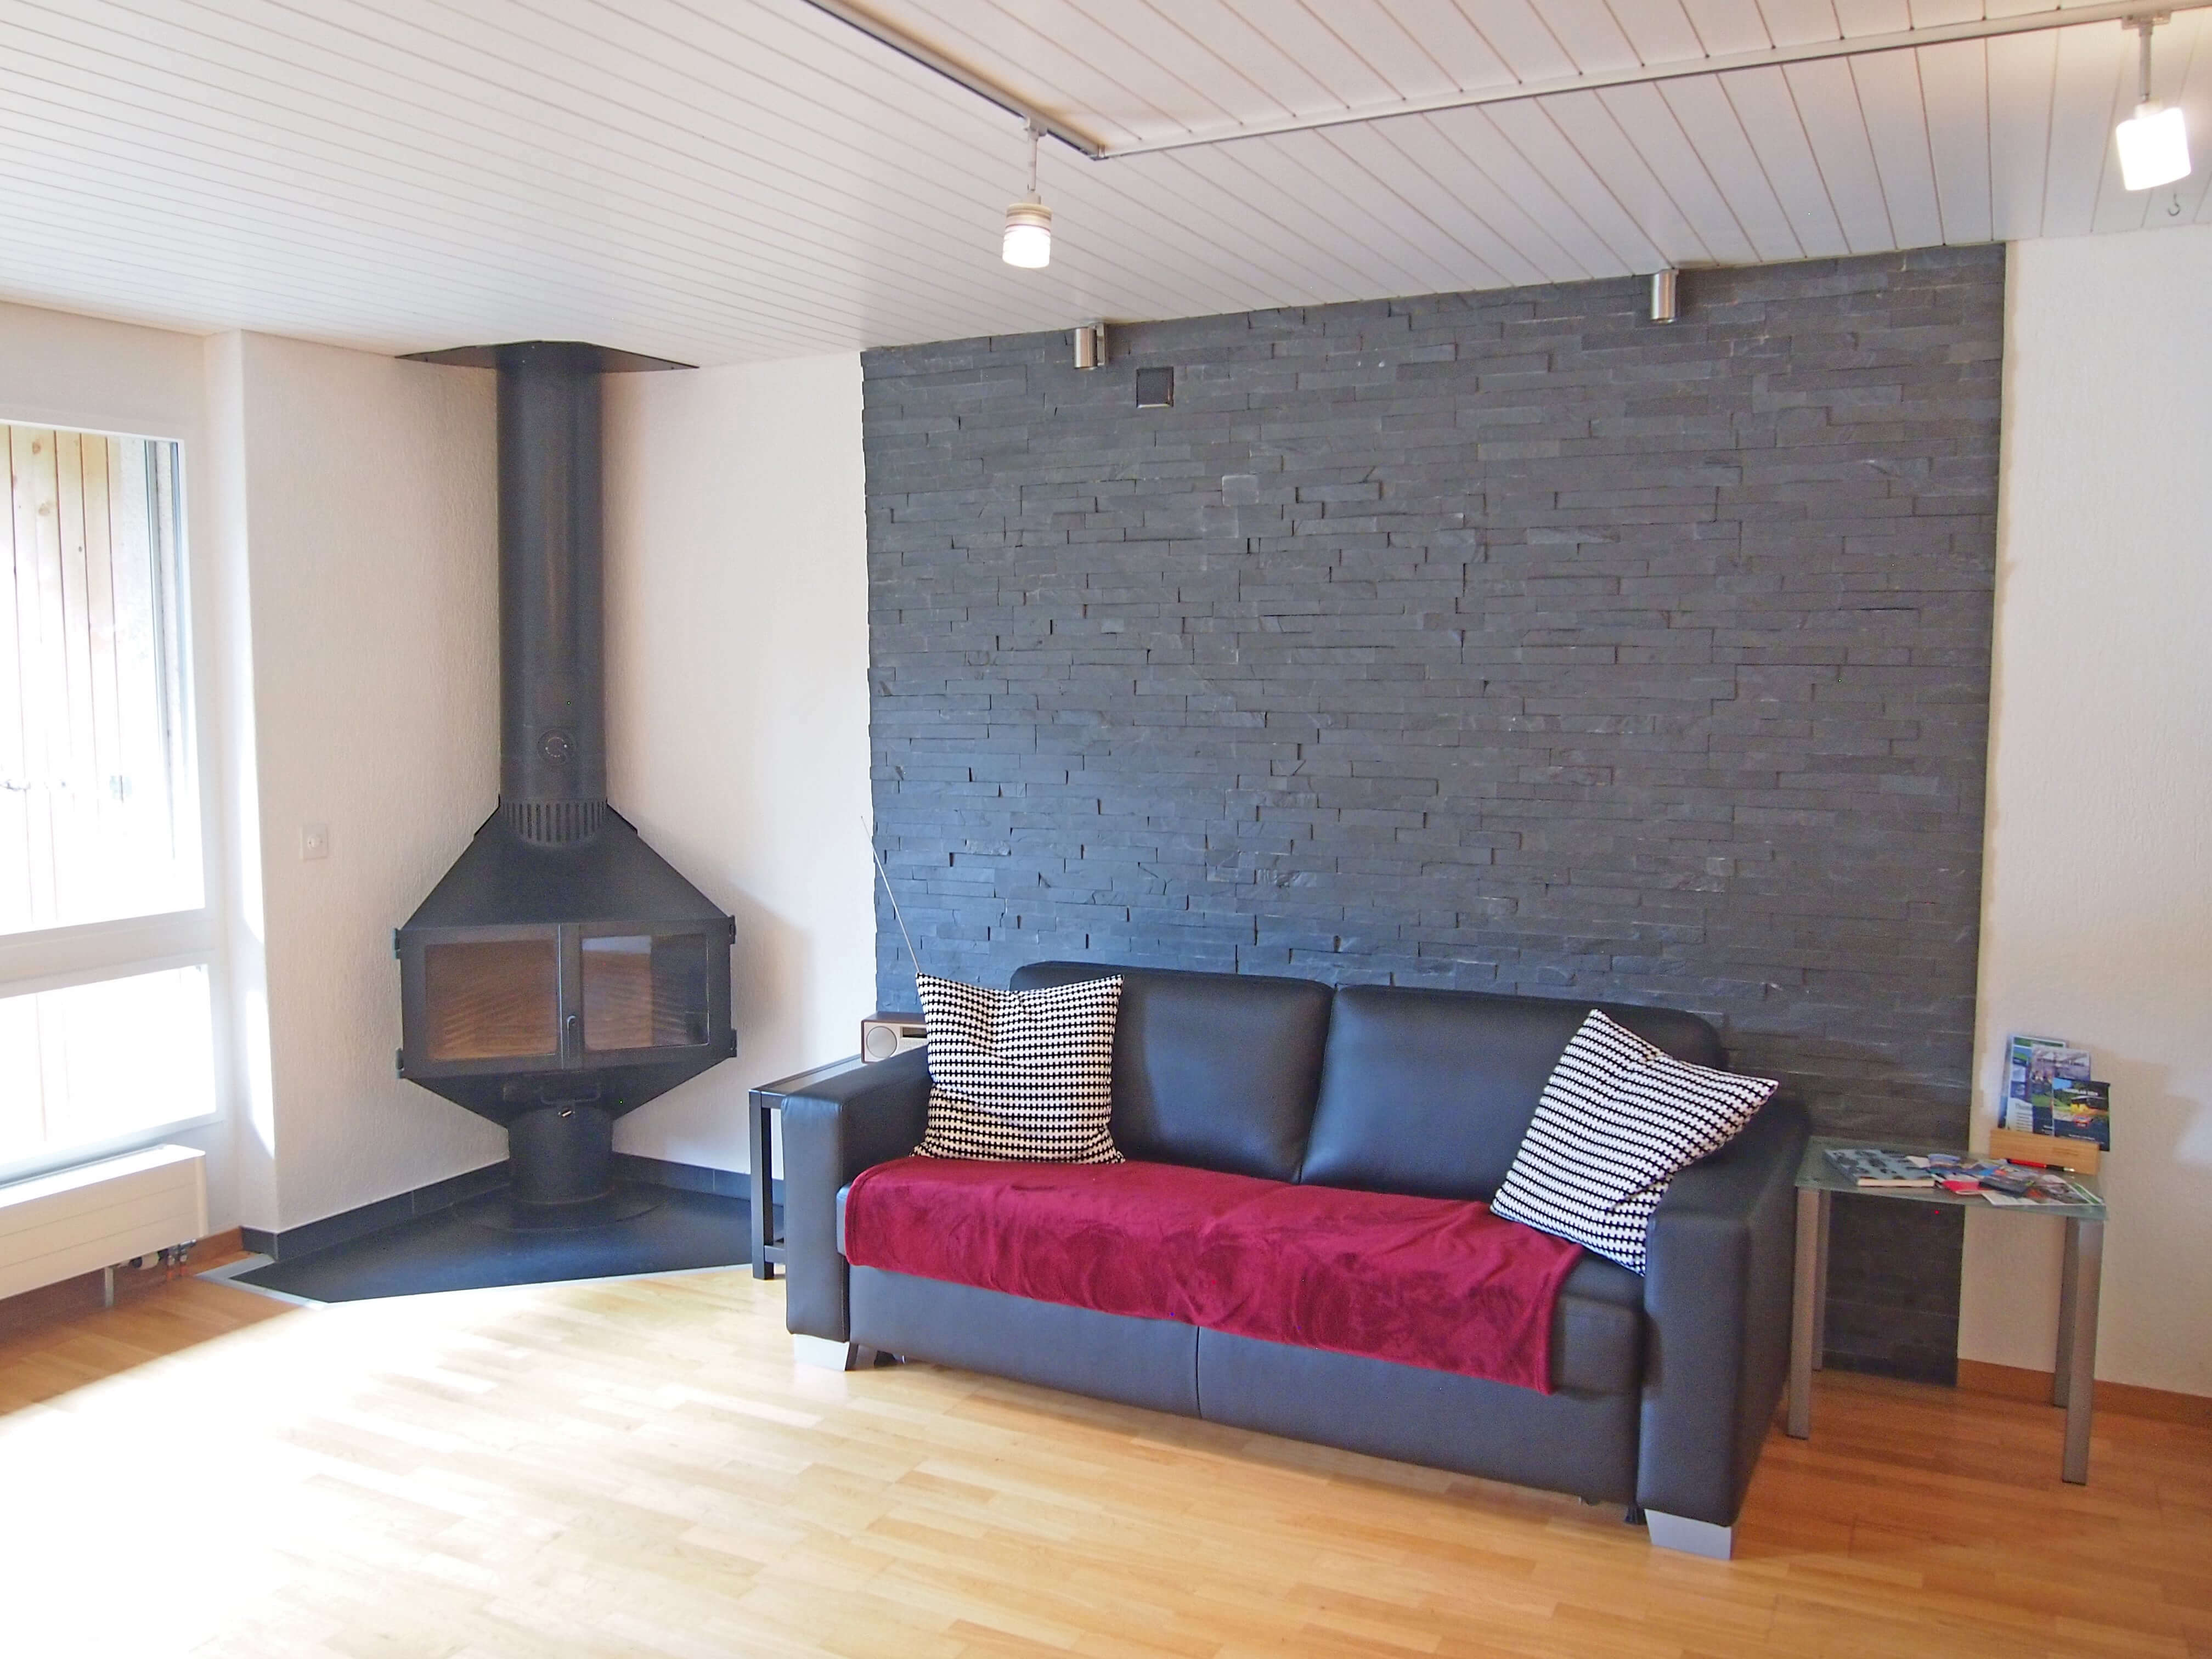 Swedish stove and sofa